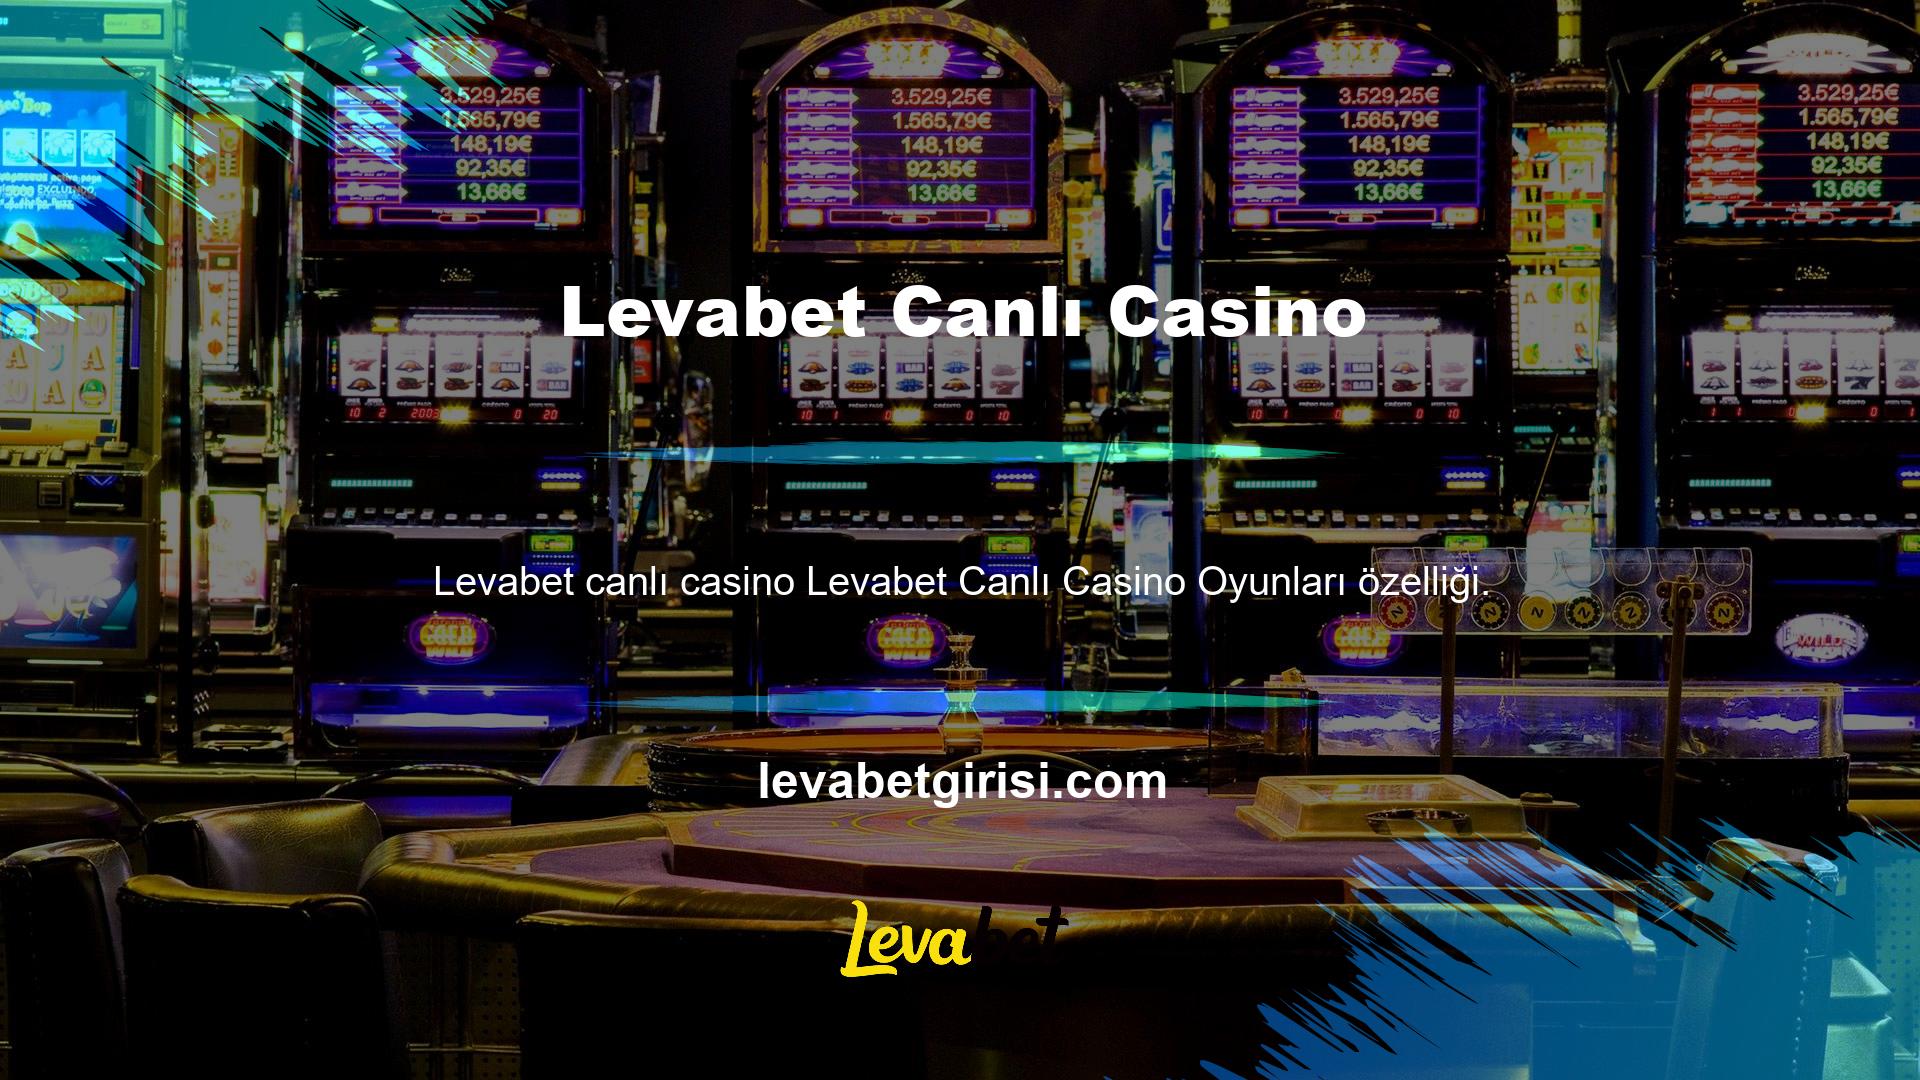 Hem video oyunları hem de gerçek para gerektiren oyunlar dahil olmak üzere Levabet canlı casino oyunları bölümüne en çok önem verilmektedir